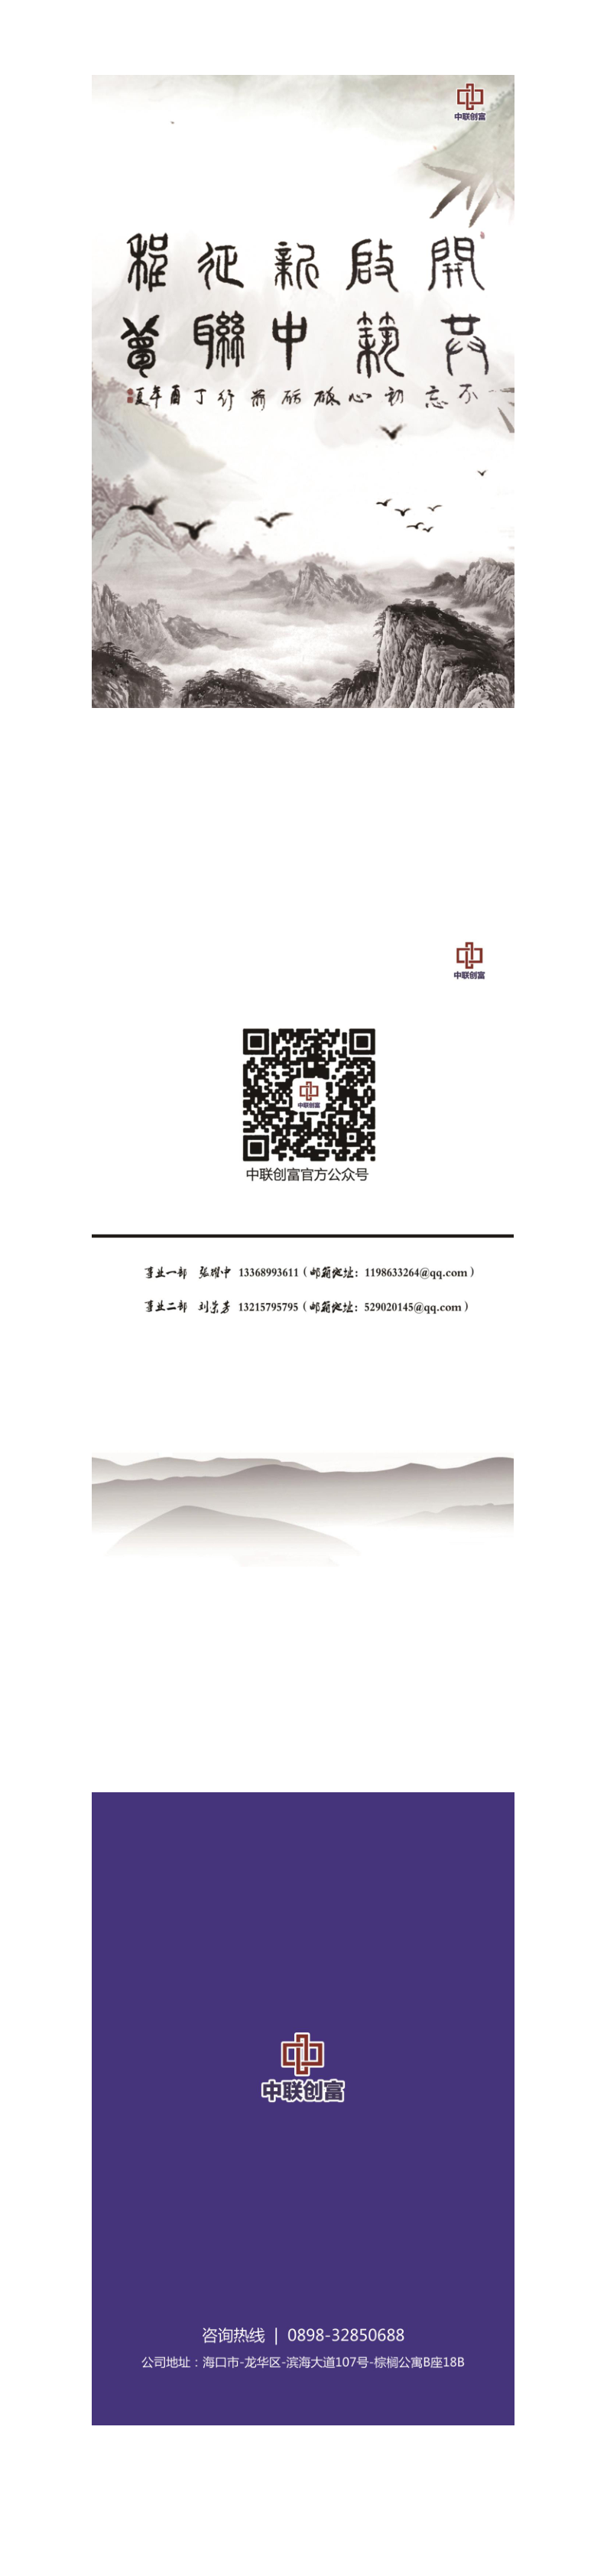 中联创富公司宣传画册2.0版(1)(1)_90_92.png